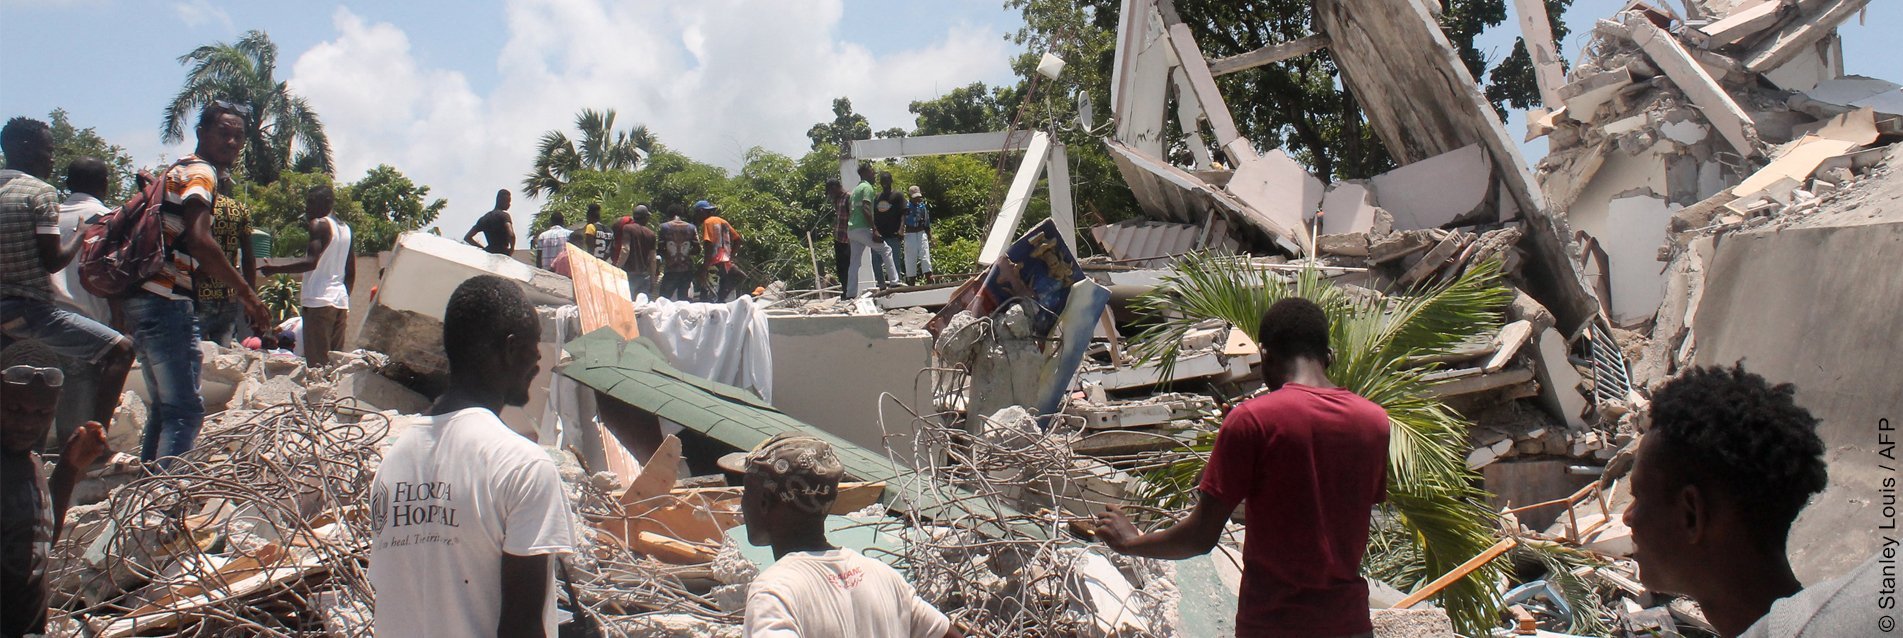 Solidarité Haïti : après le dernier séisme, venir en aide à la population sinistrée